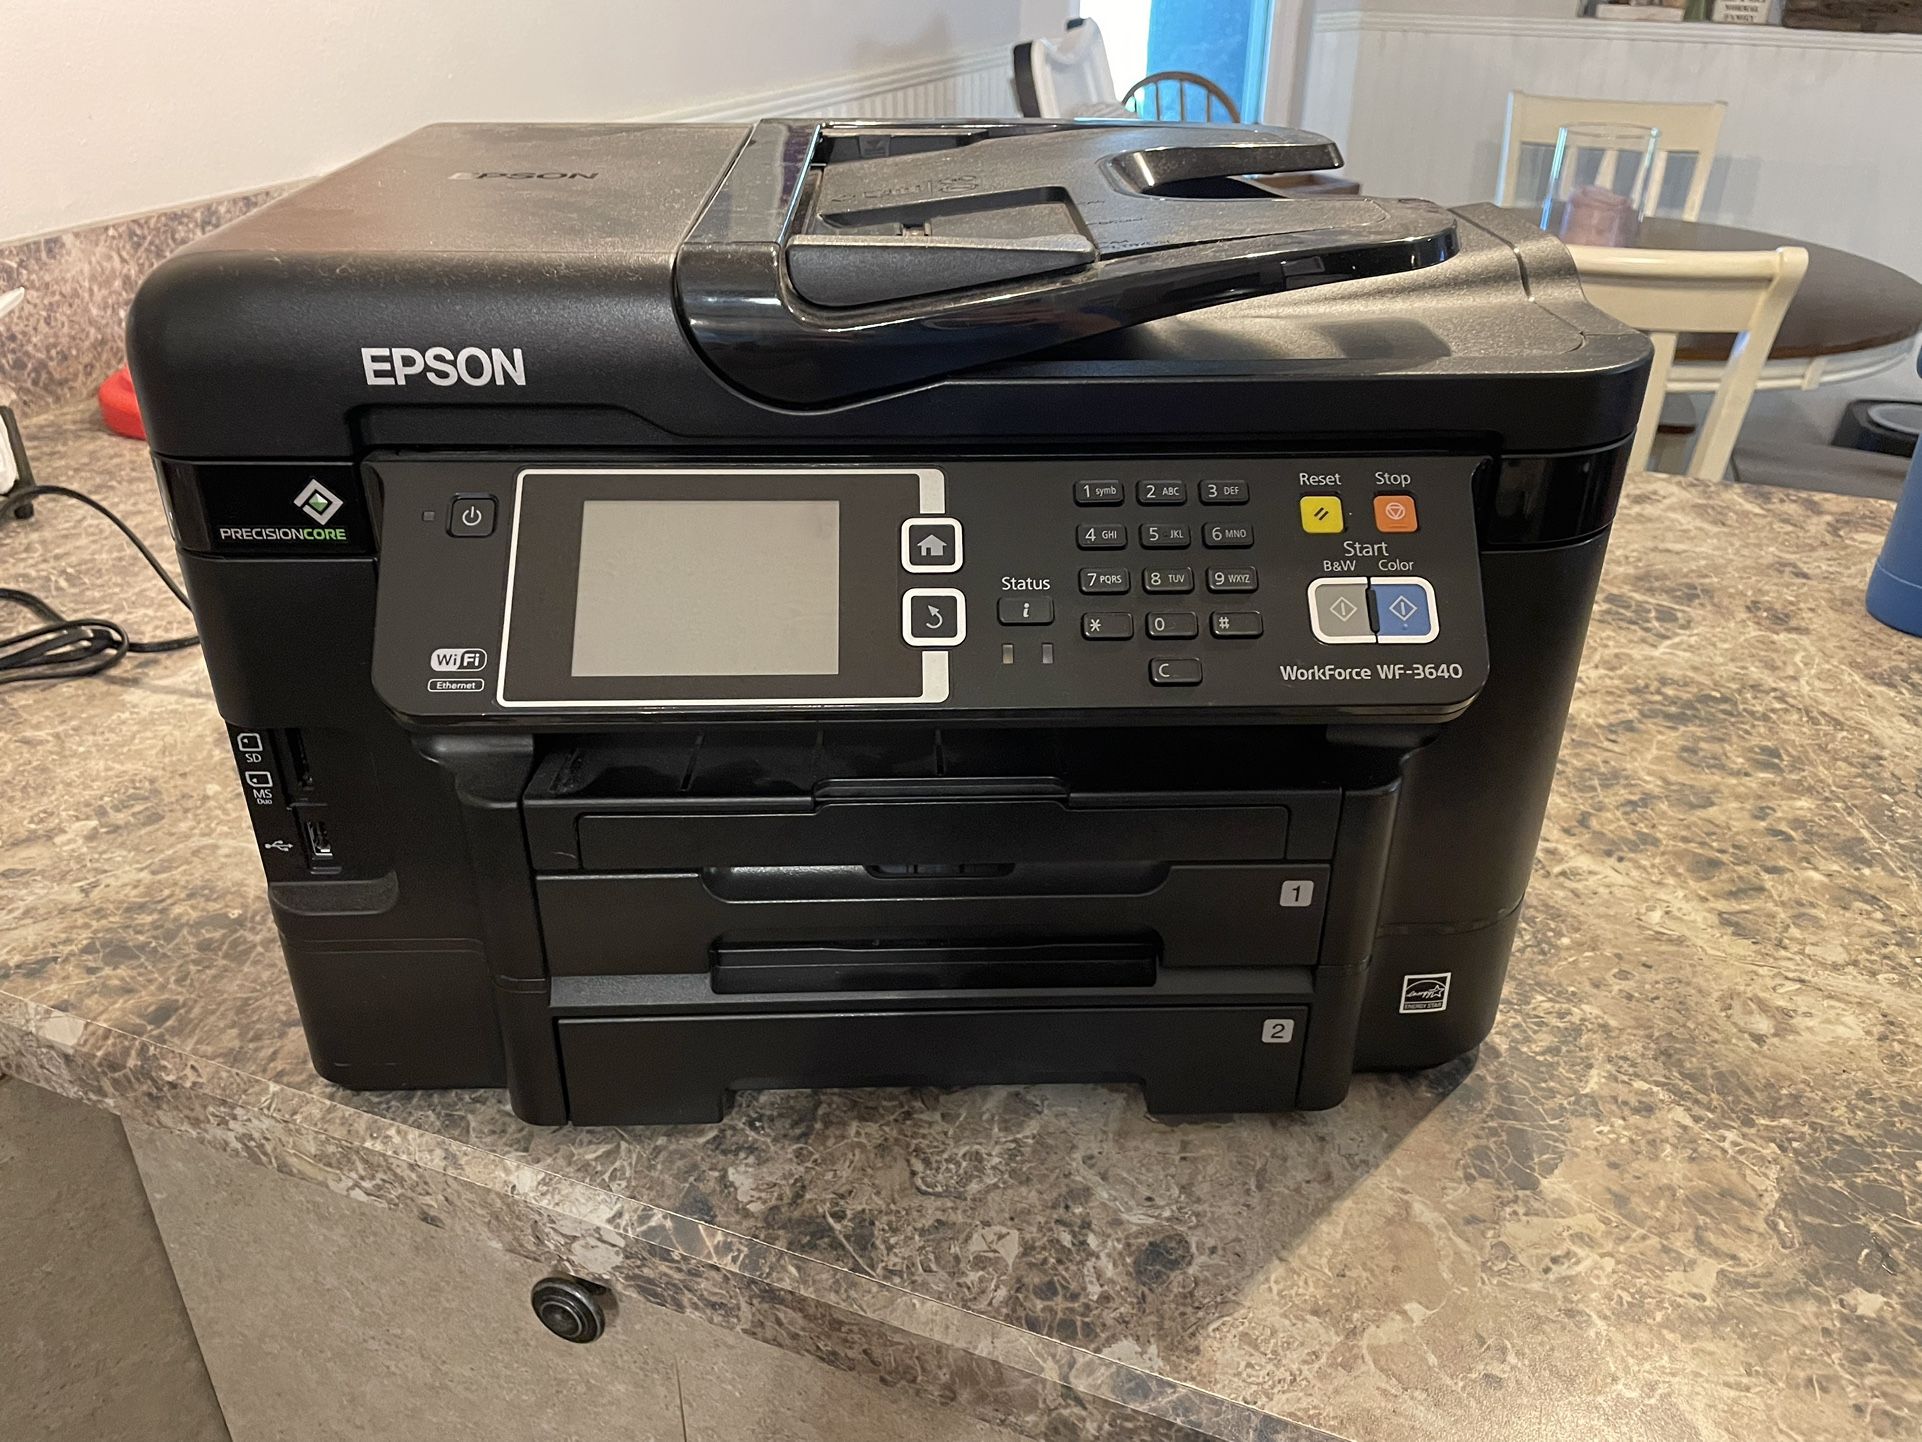 Epson Printer/fax/copier